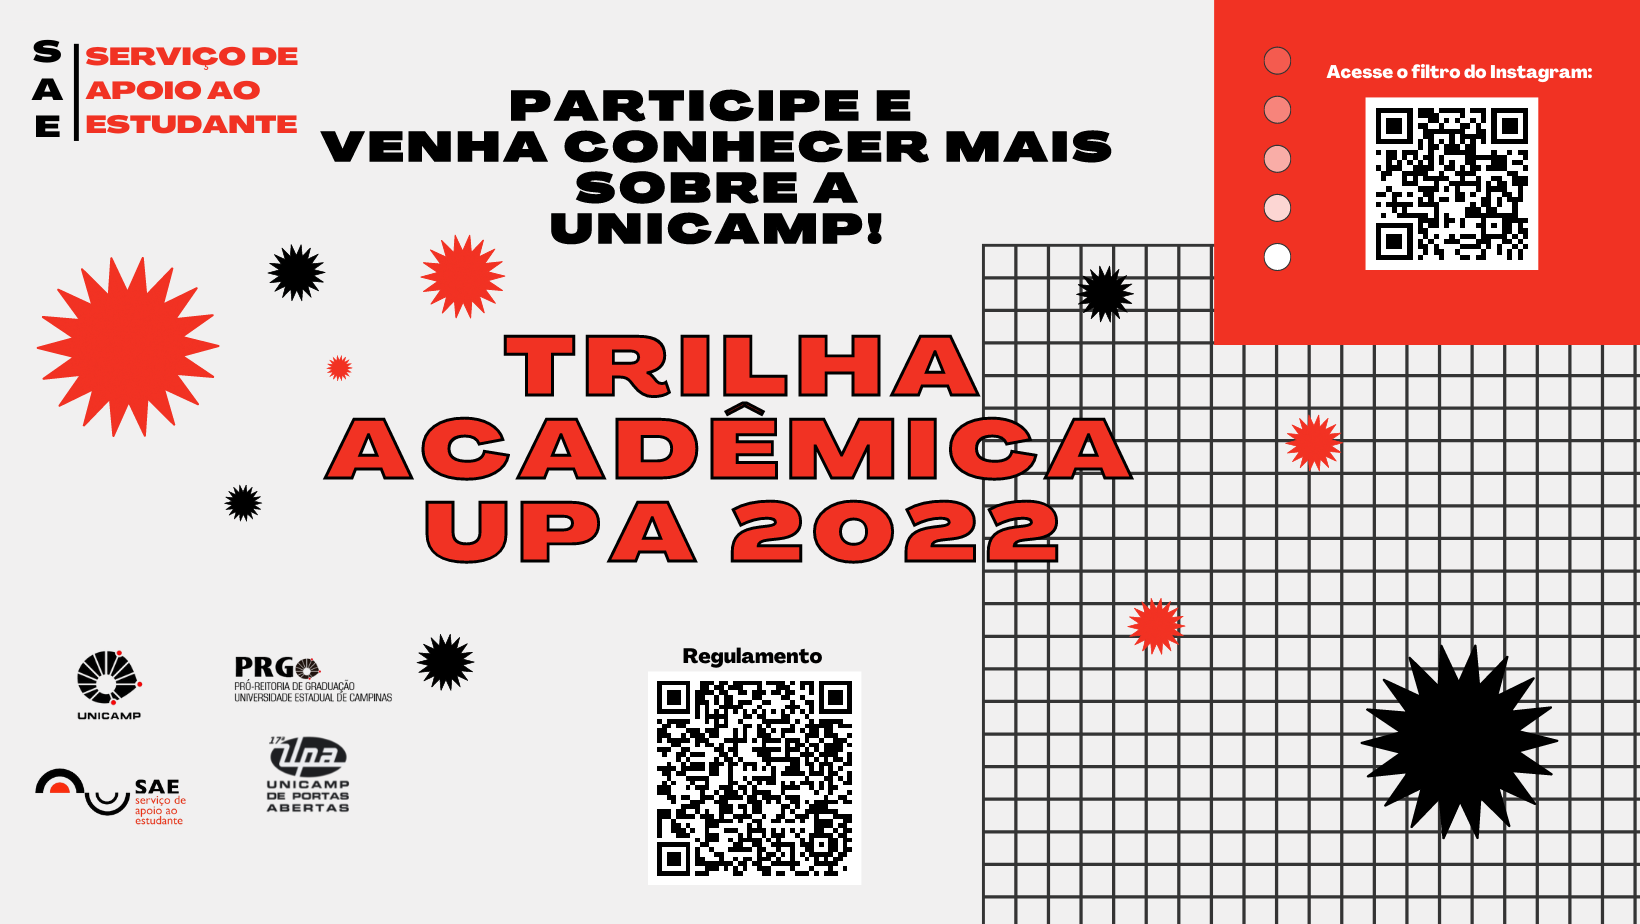 UPA 2022: Trilha Acadêmica